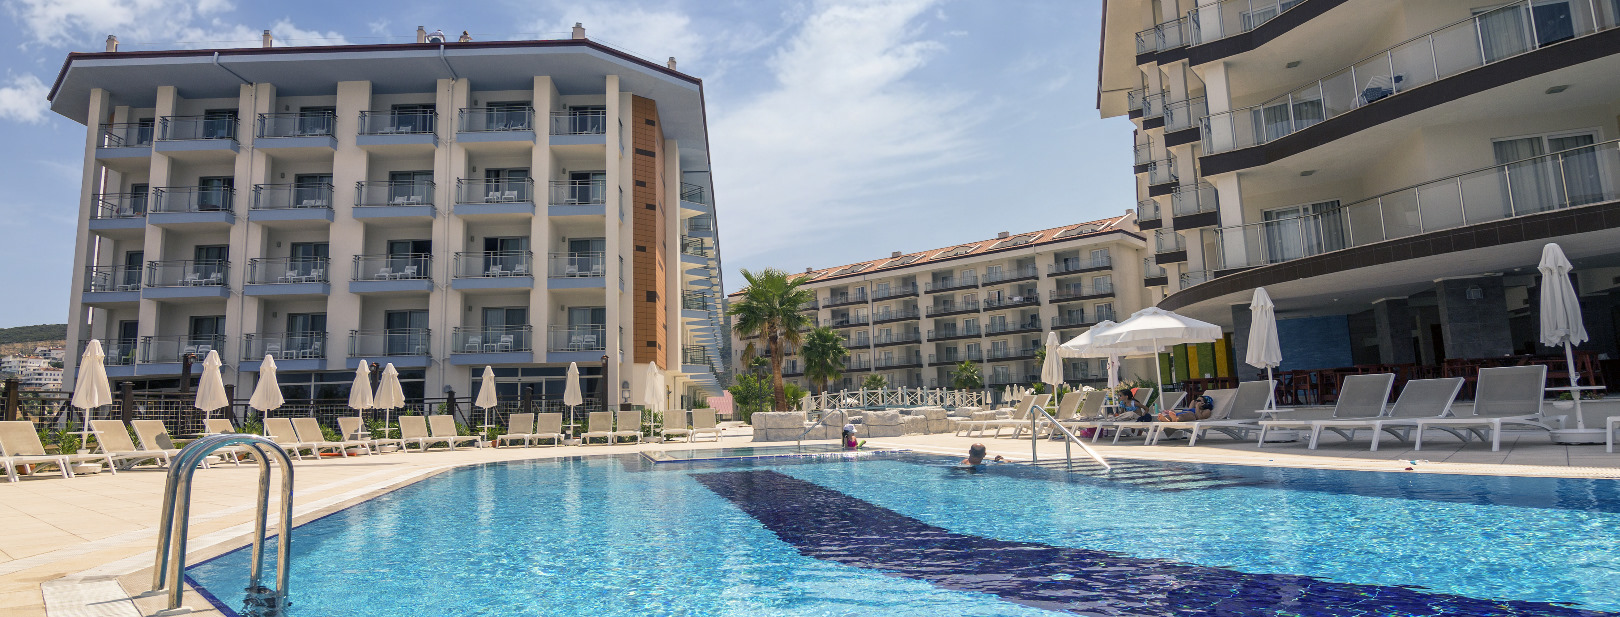 Turquie - Izmir - Ramada Hotel & Suite 4*